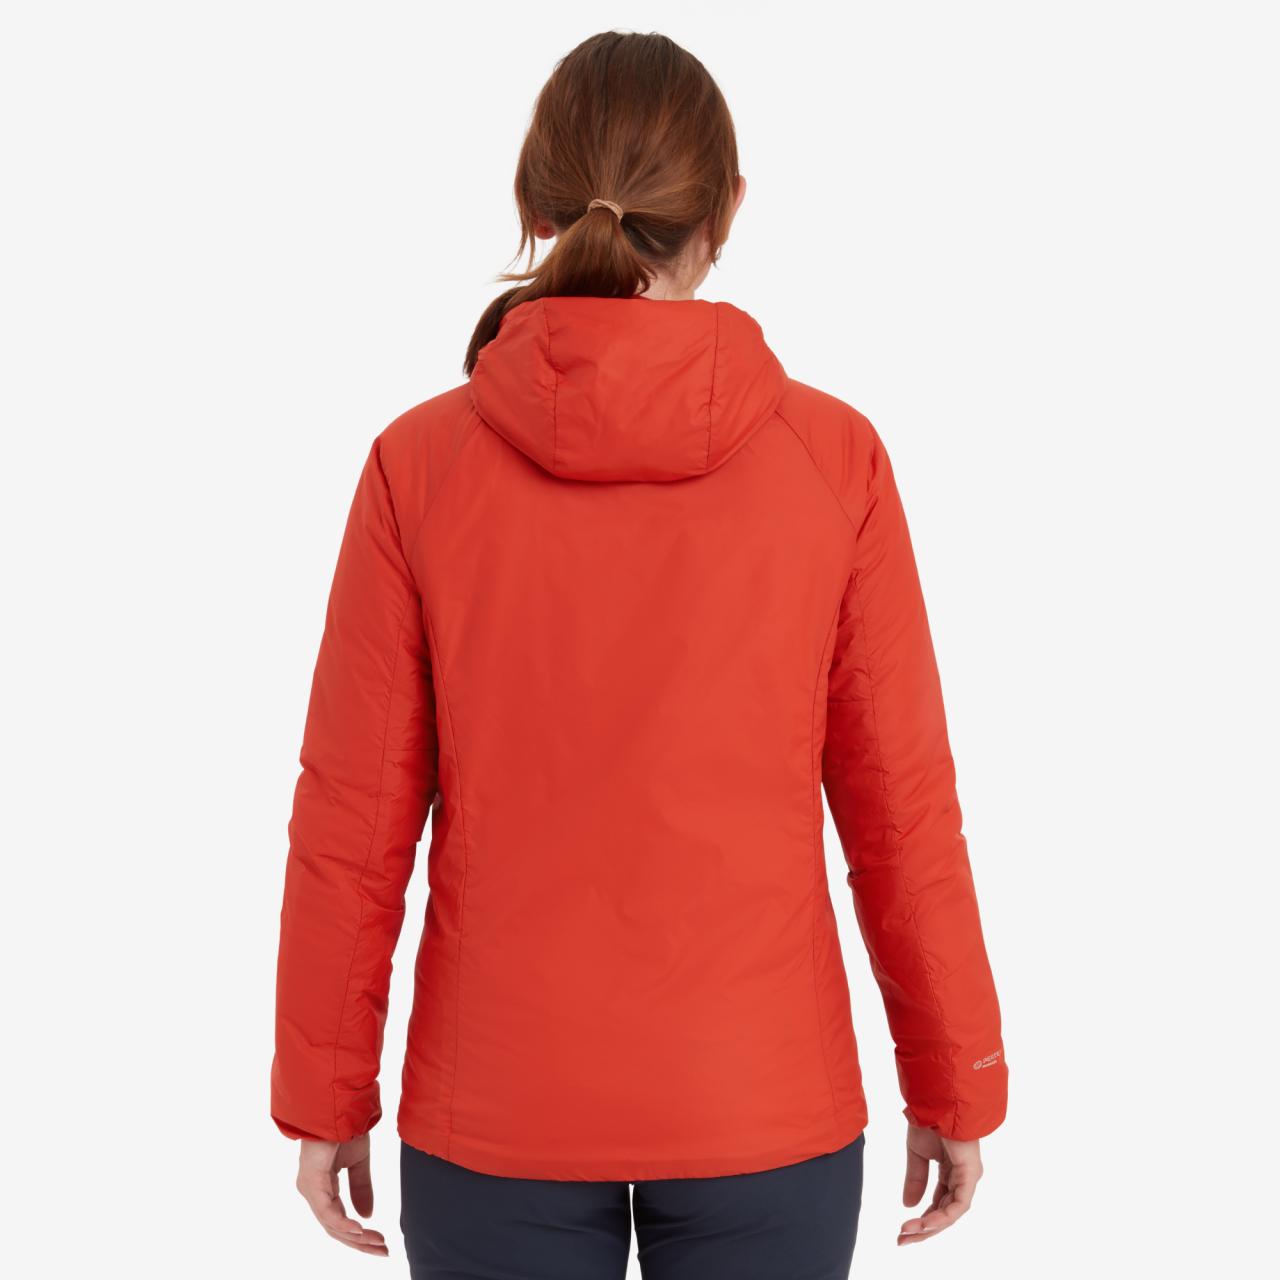 FEM RESPOND HOODIE-SAFFRON RED-UK8/XS dámská bunda s kapucí červená